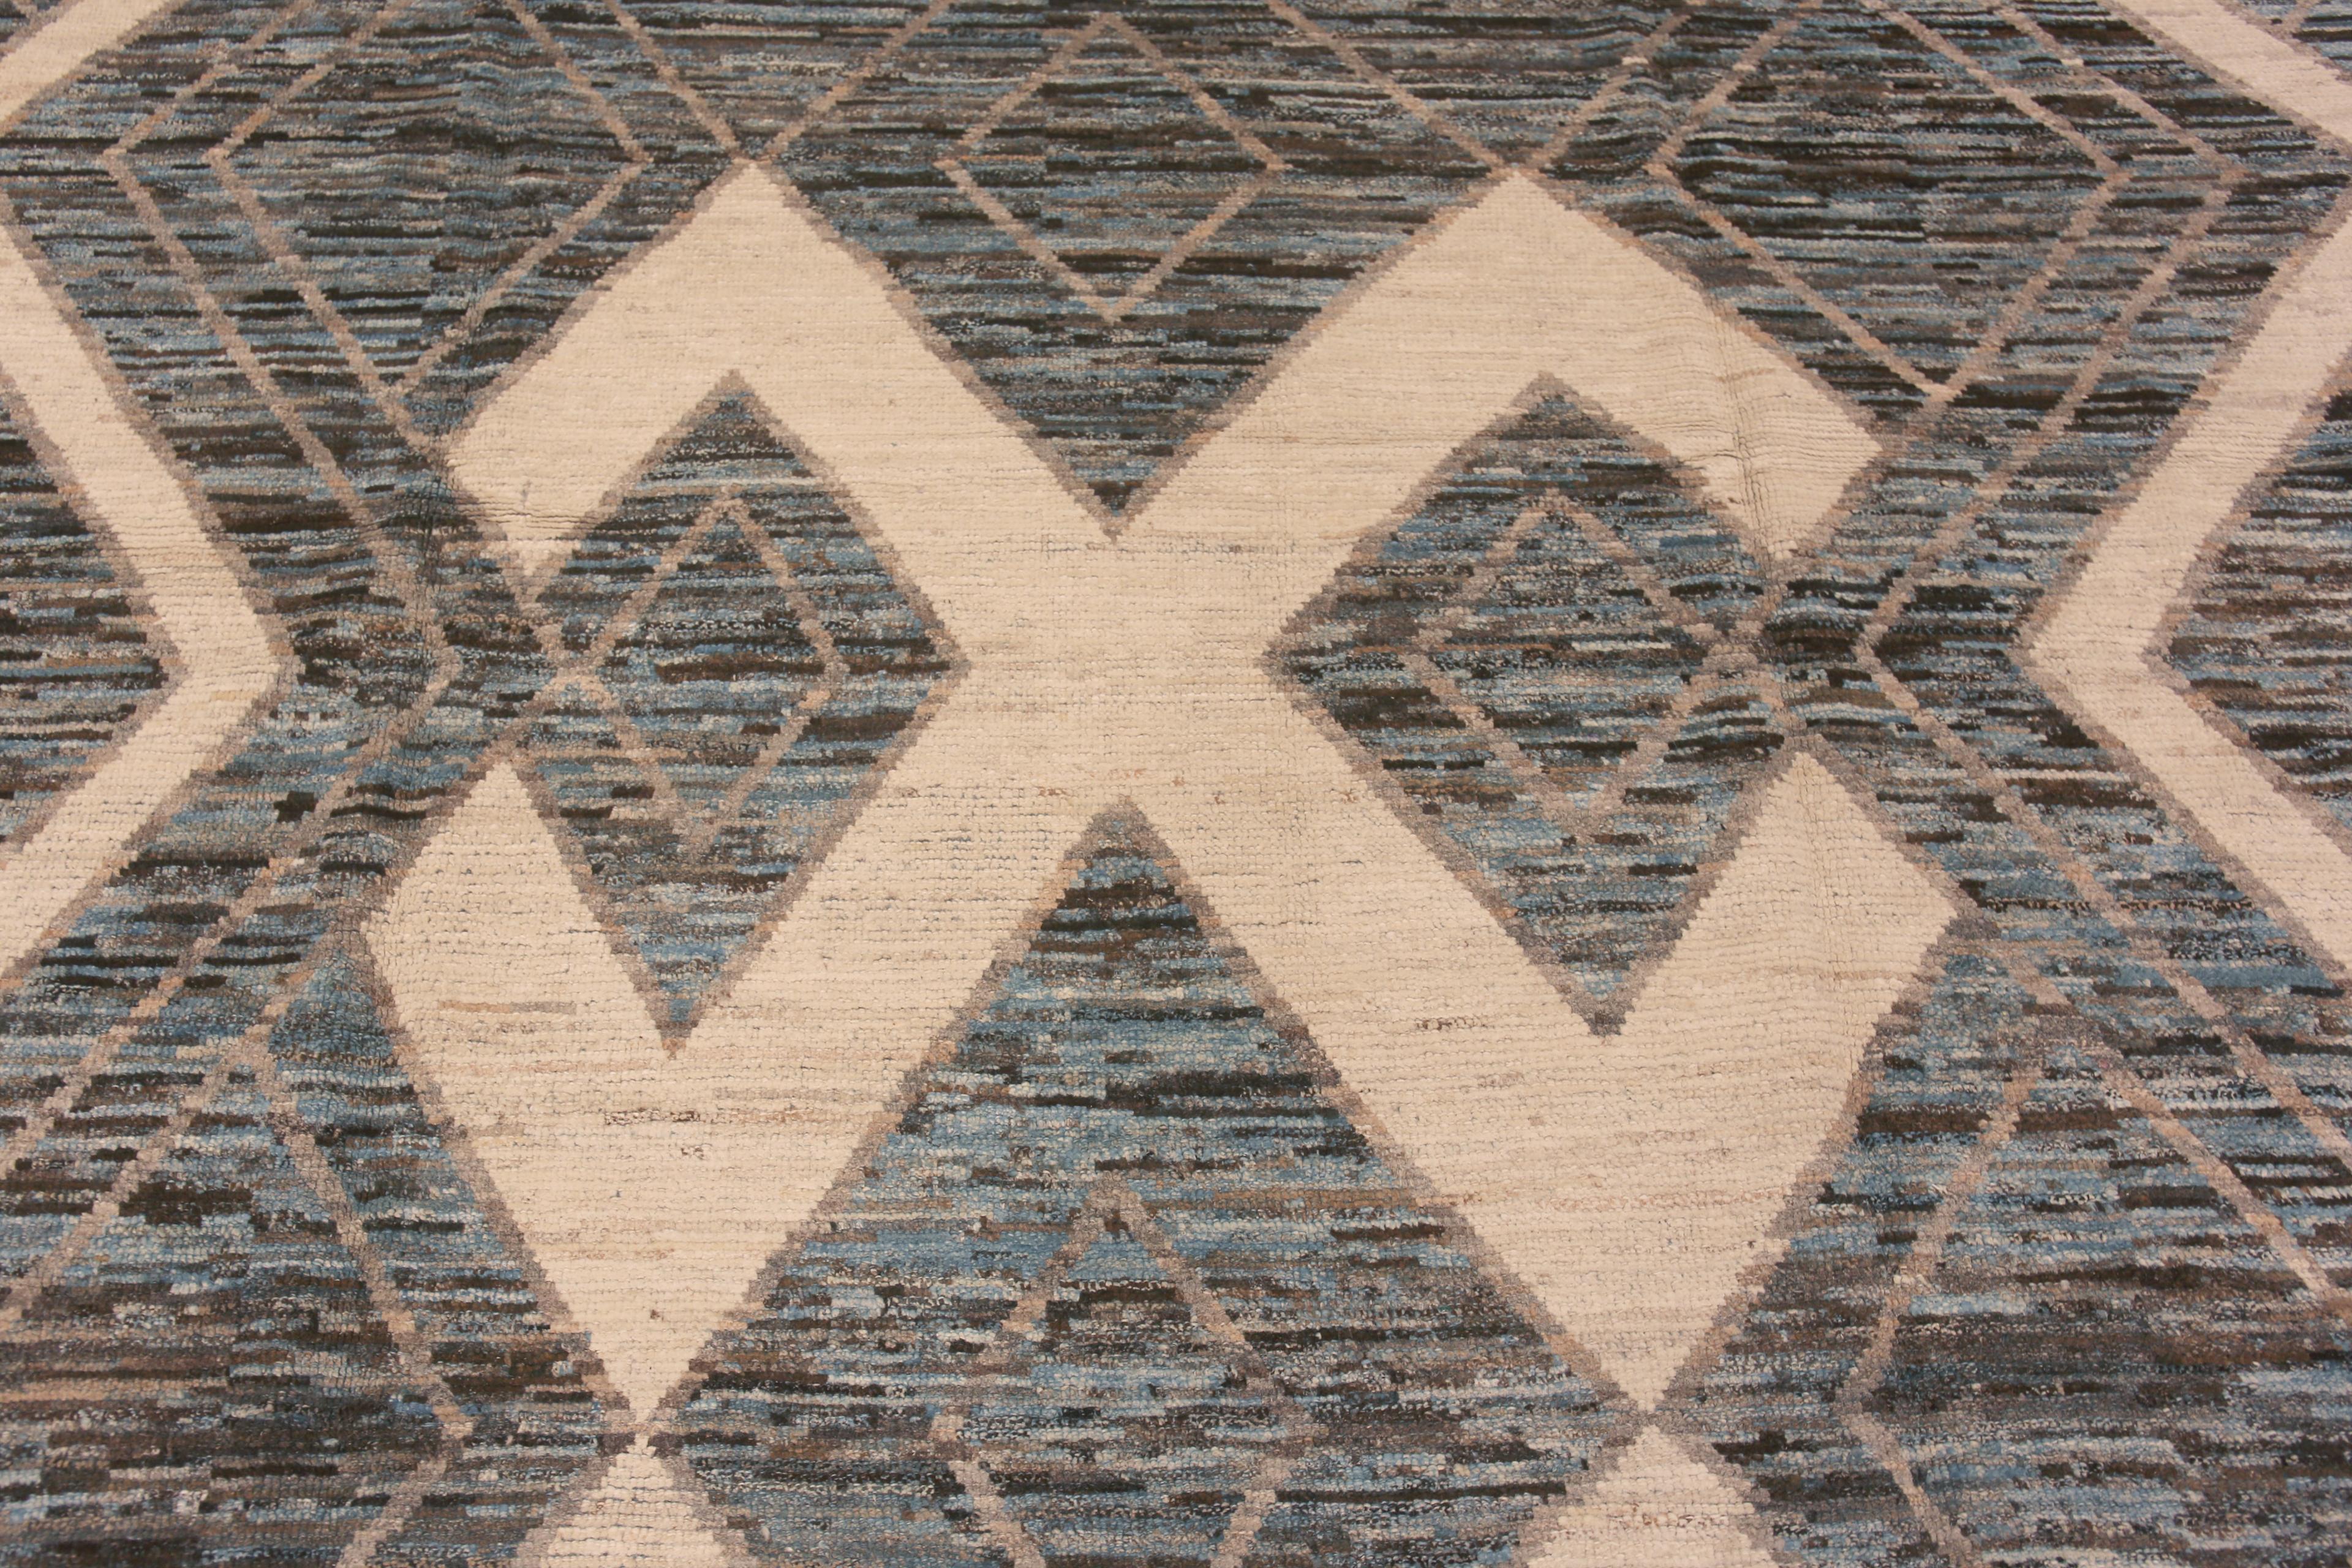 Tribal Collection Nazmiyal - Tapis géométrique tribal à fond terreux moderne 9'3